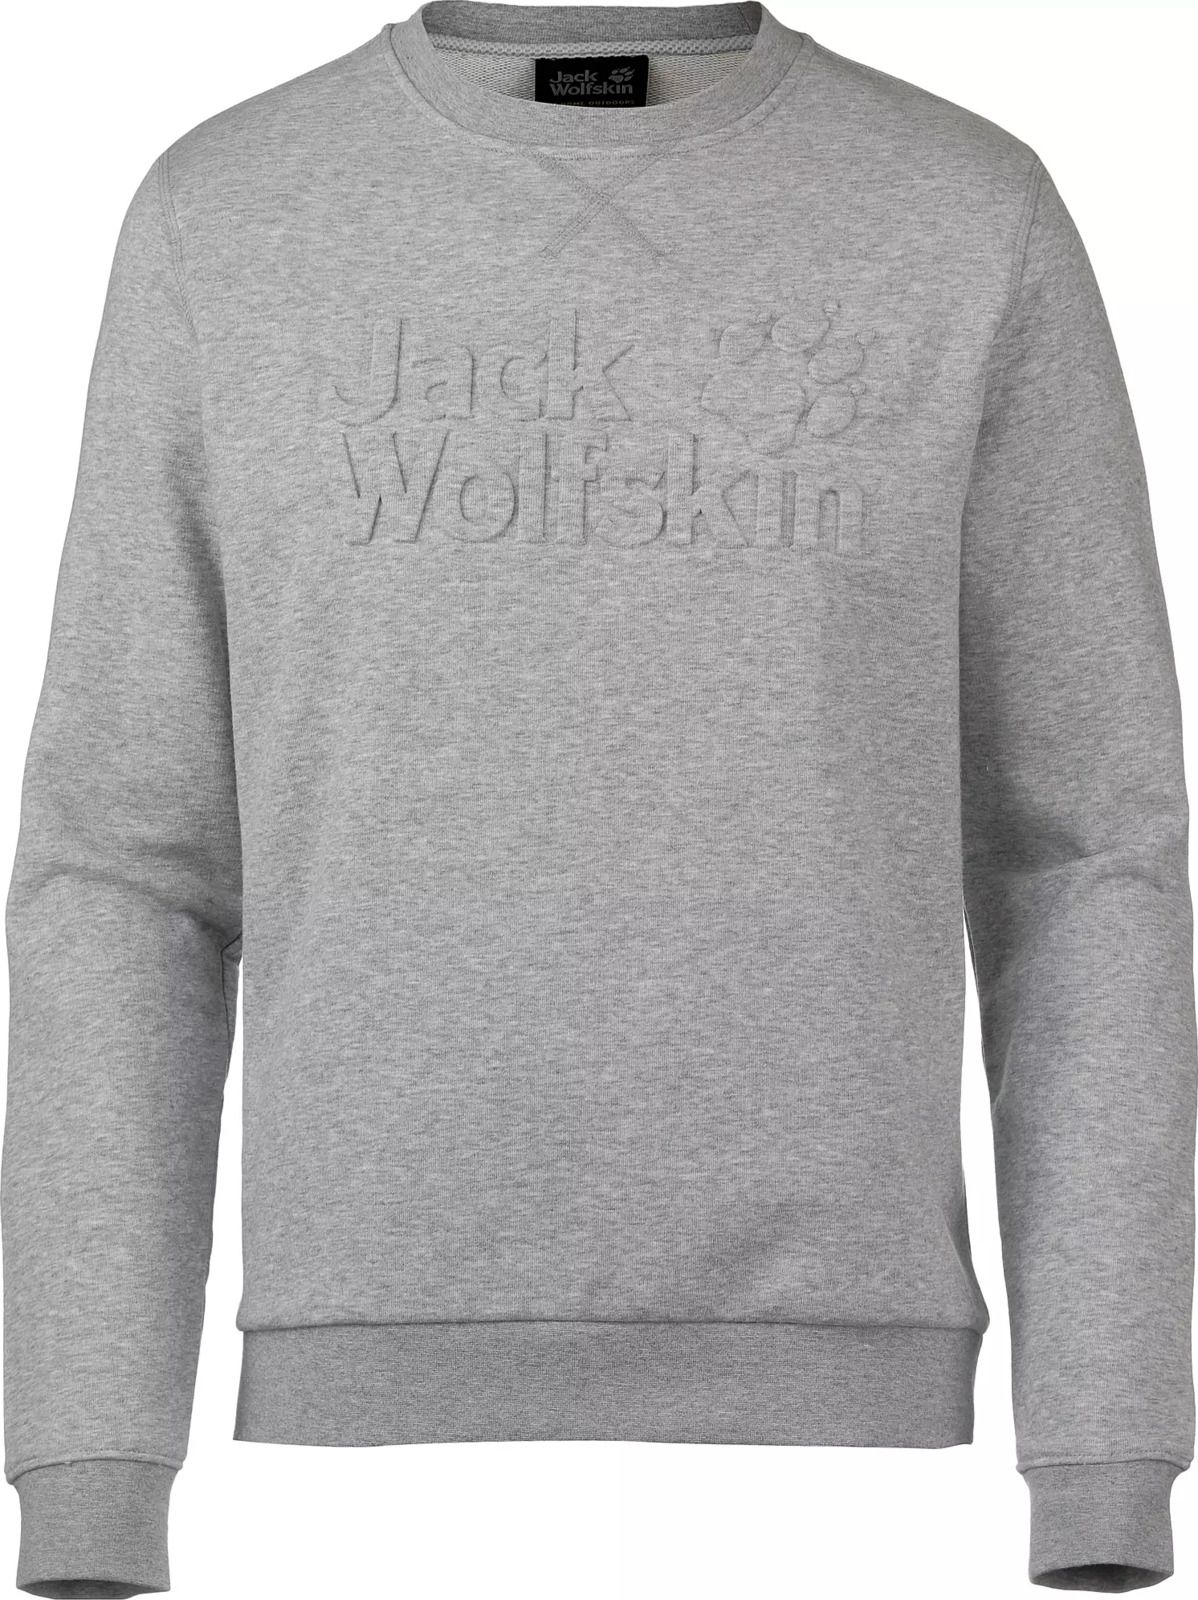   Jack Wolfskin Logo Sweatshirt M, : -. 5018891-6111.  S (42/44)